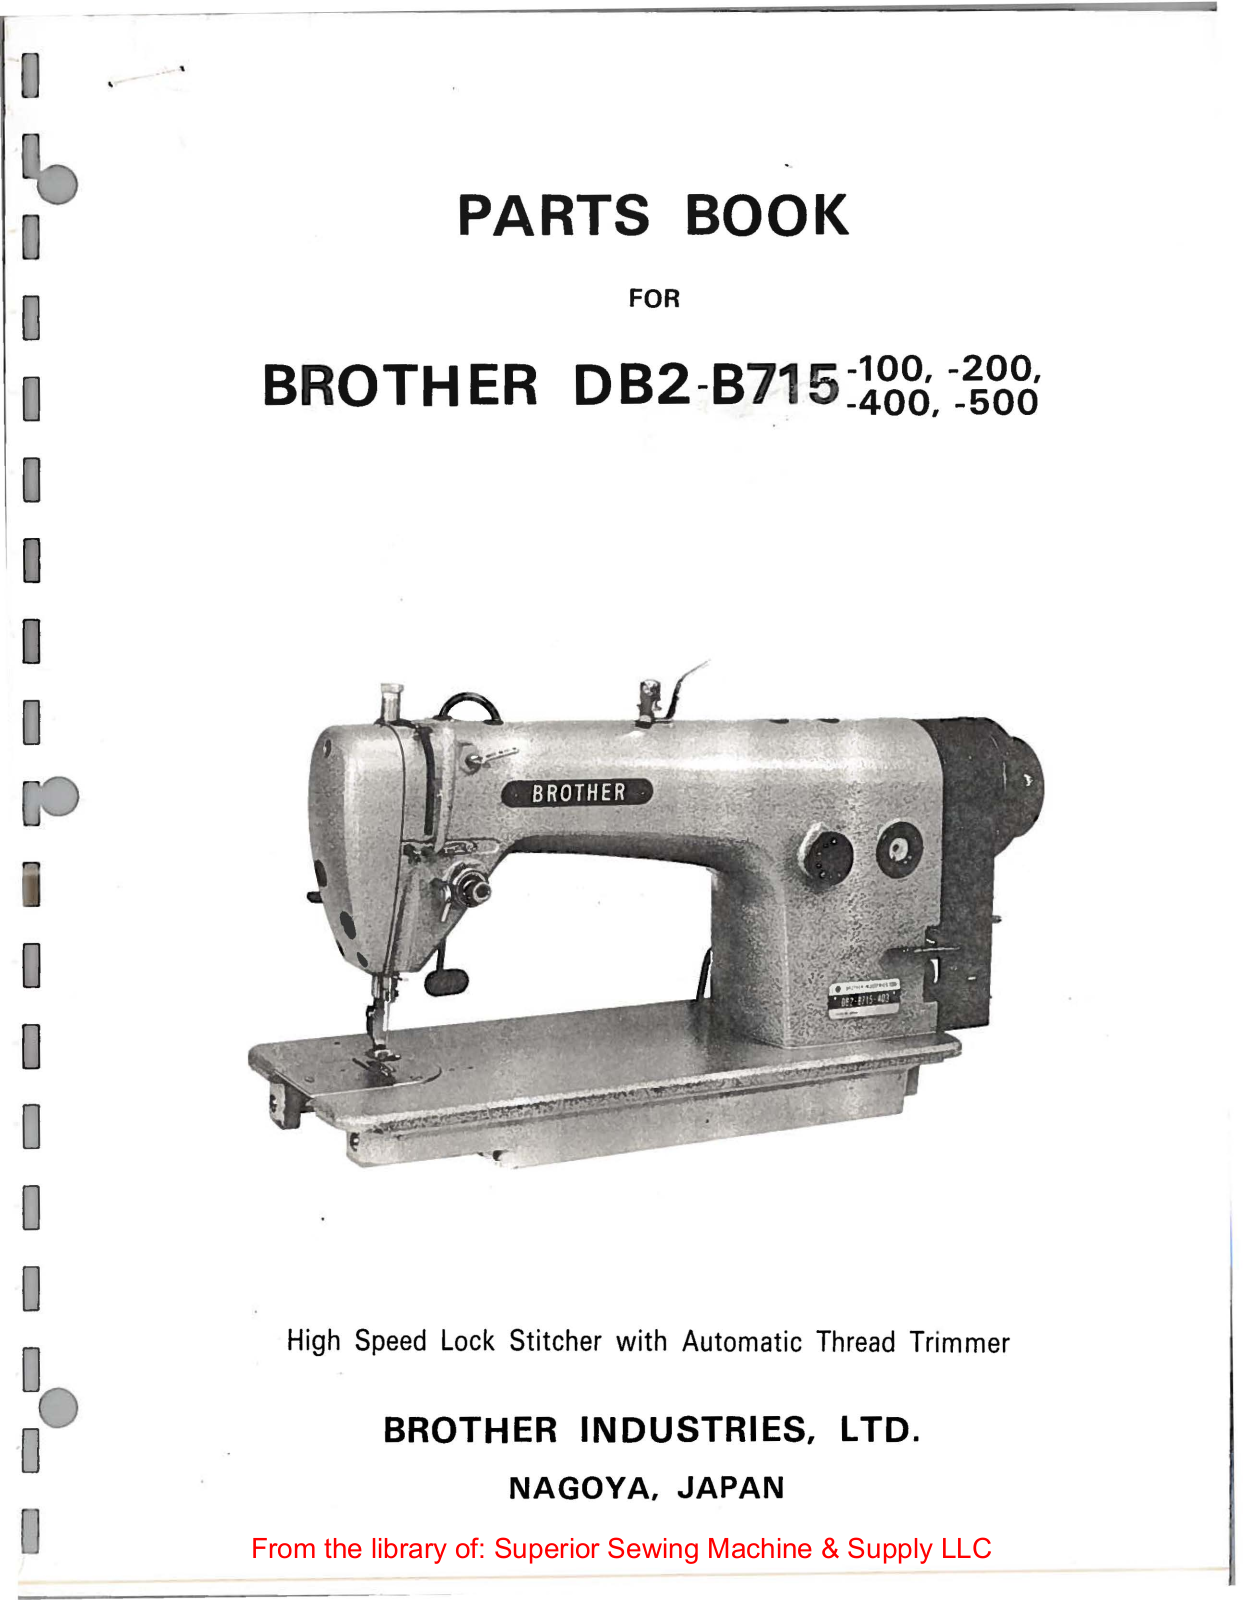 Brother DB2-B715-100, DB2-B715-200, DB2-B715-400, DB2-B715-500 Manual